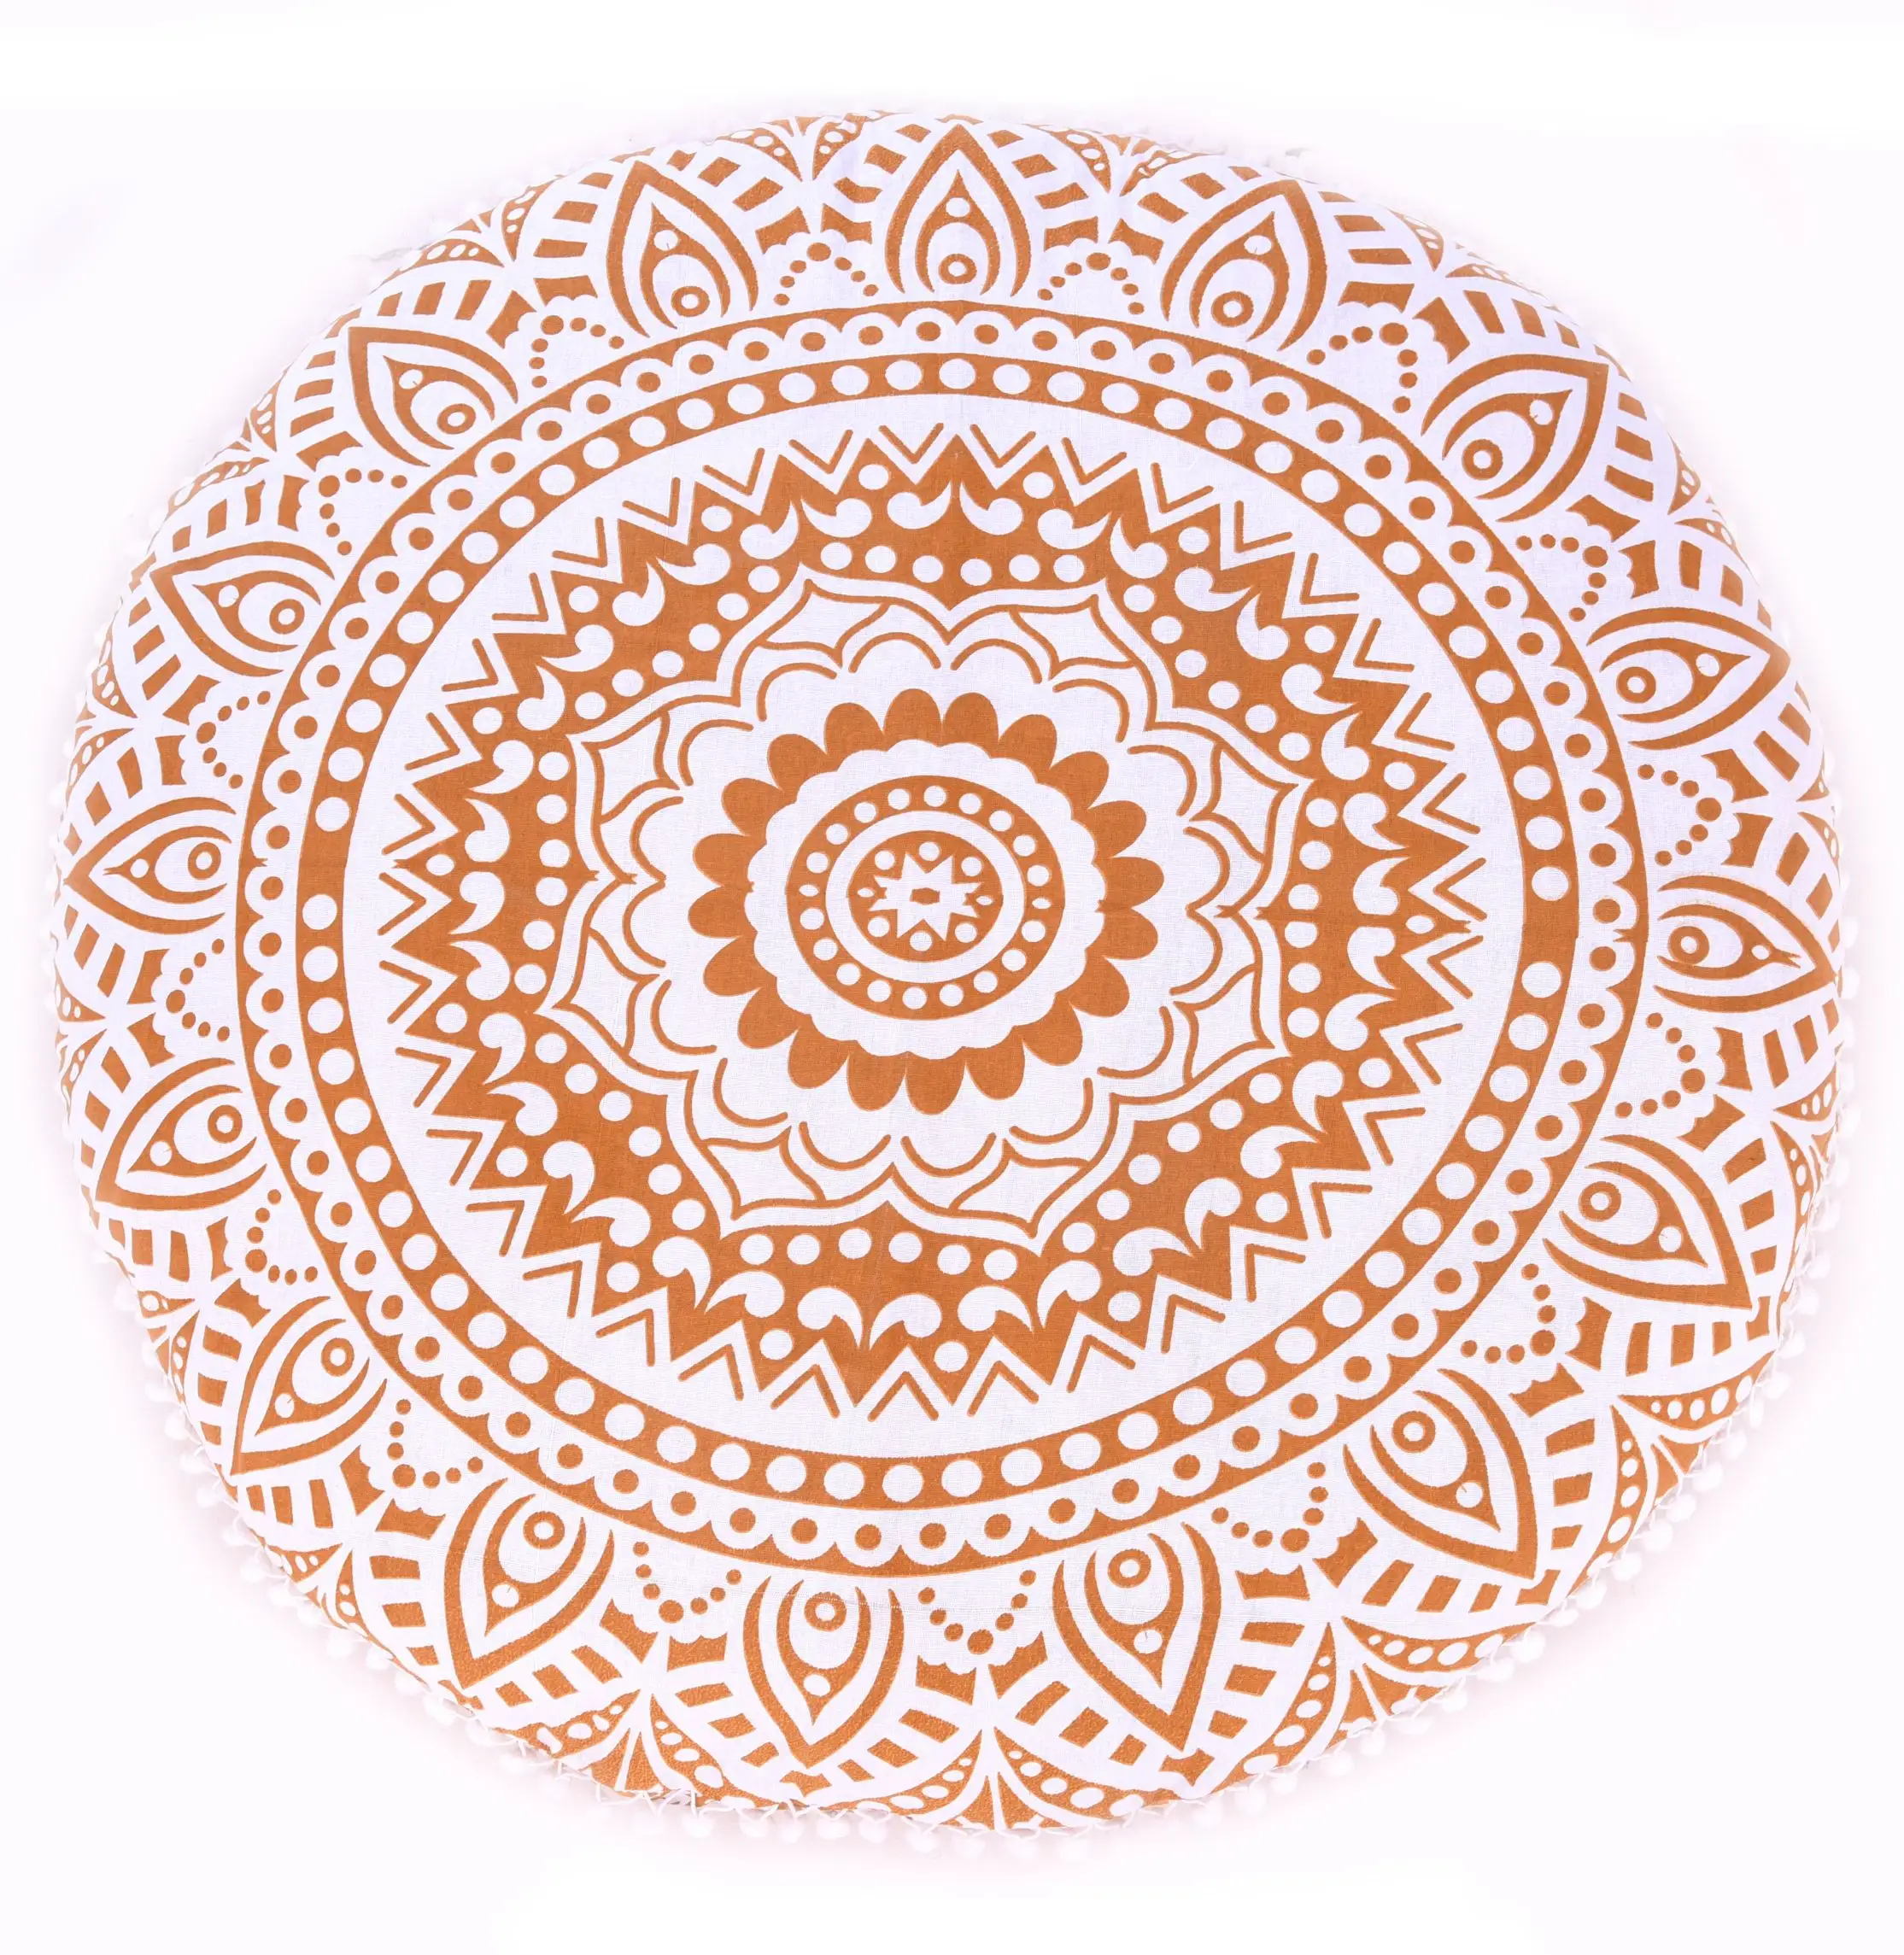 Indischen Dekorative Baumwolle Handgemachte Top Qualität Runde Ombre Mandala 32 "Zoll Boden Kissen Abdeckung Kissen Fall